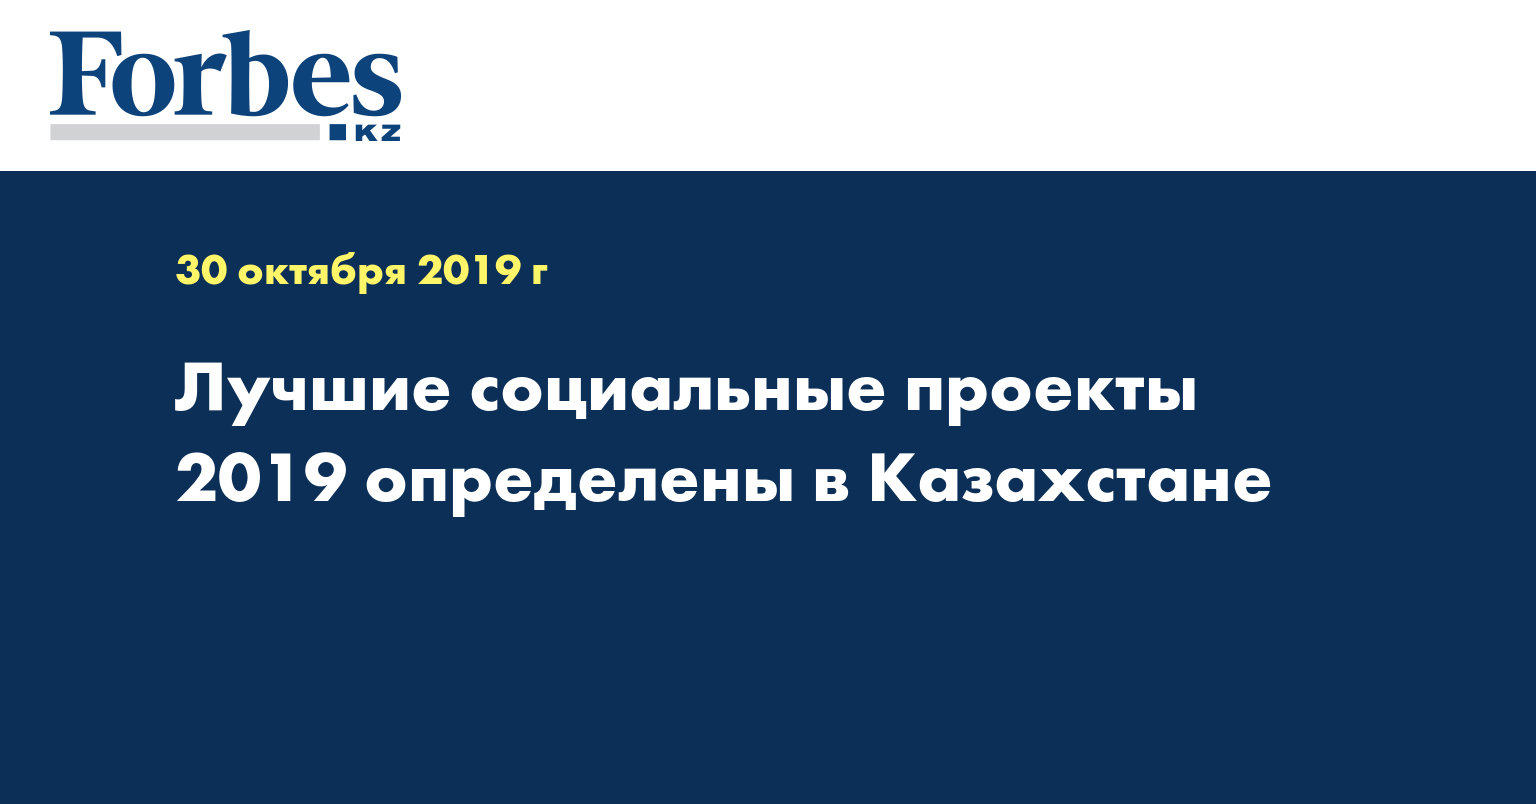 Лучшие социальные проекты 2019 определены в Казахстане